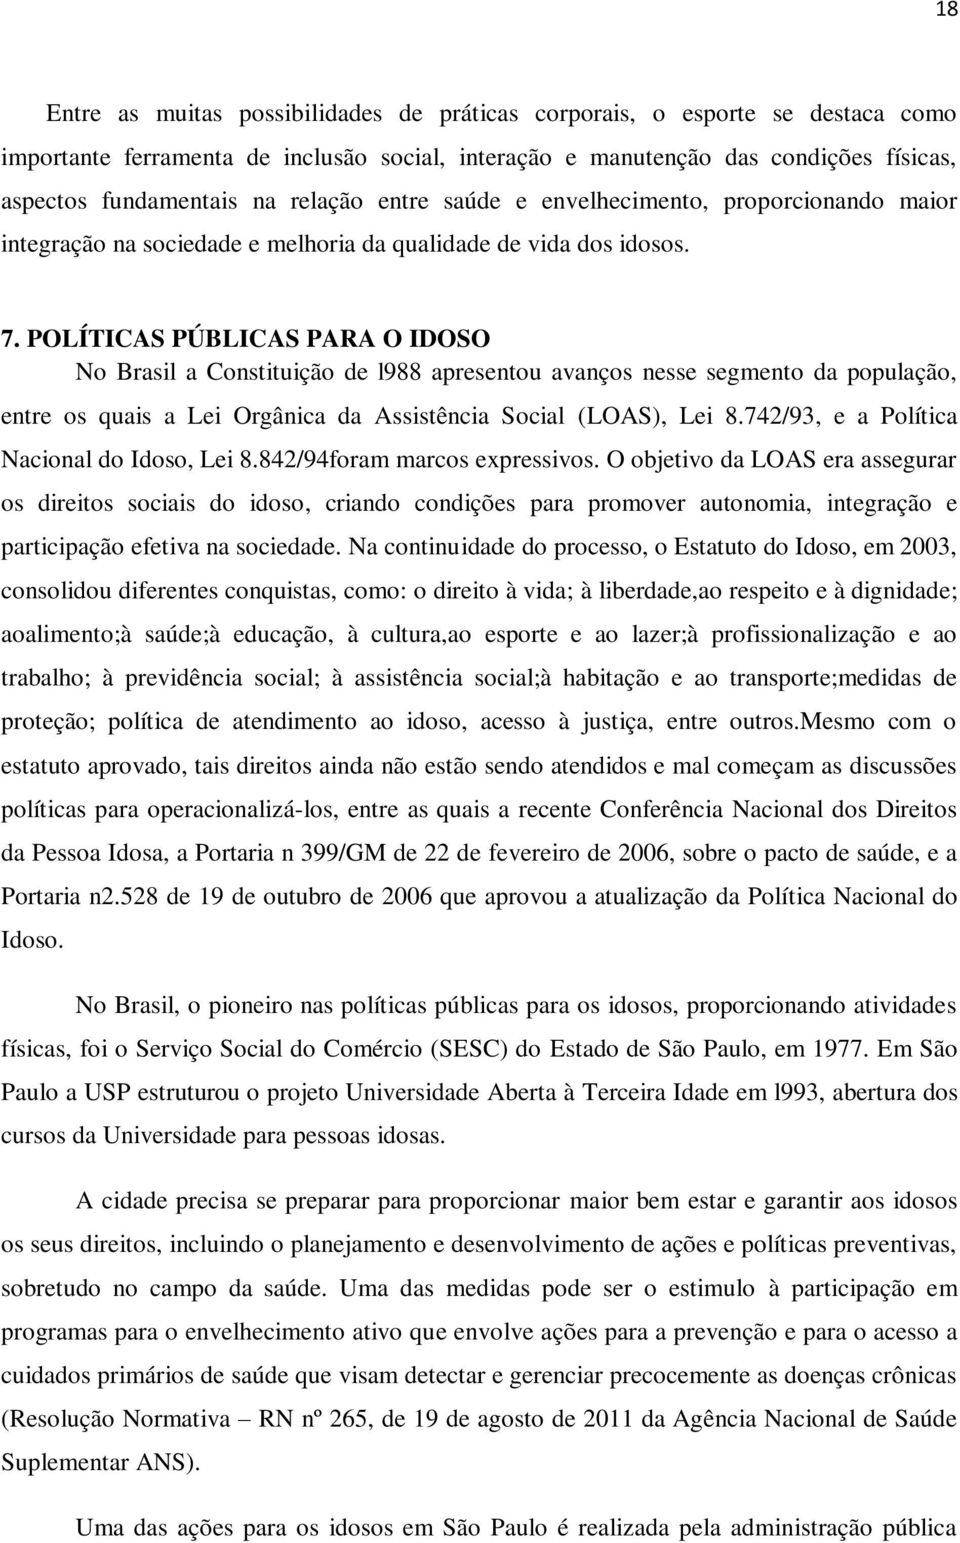 POLÍTICAS PÚBLICAS PARA O IDOSO No Brasil a Constituição de l988 apresentou avanços nesse segmento da população, entre os quais a Lei Orgânica da Assistência Social (LOAS), Lei 8.